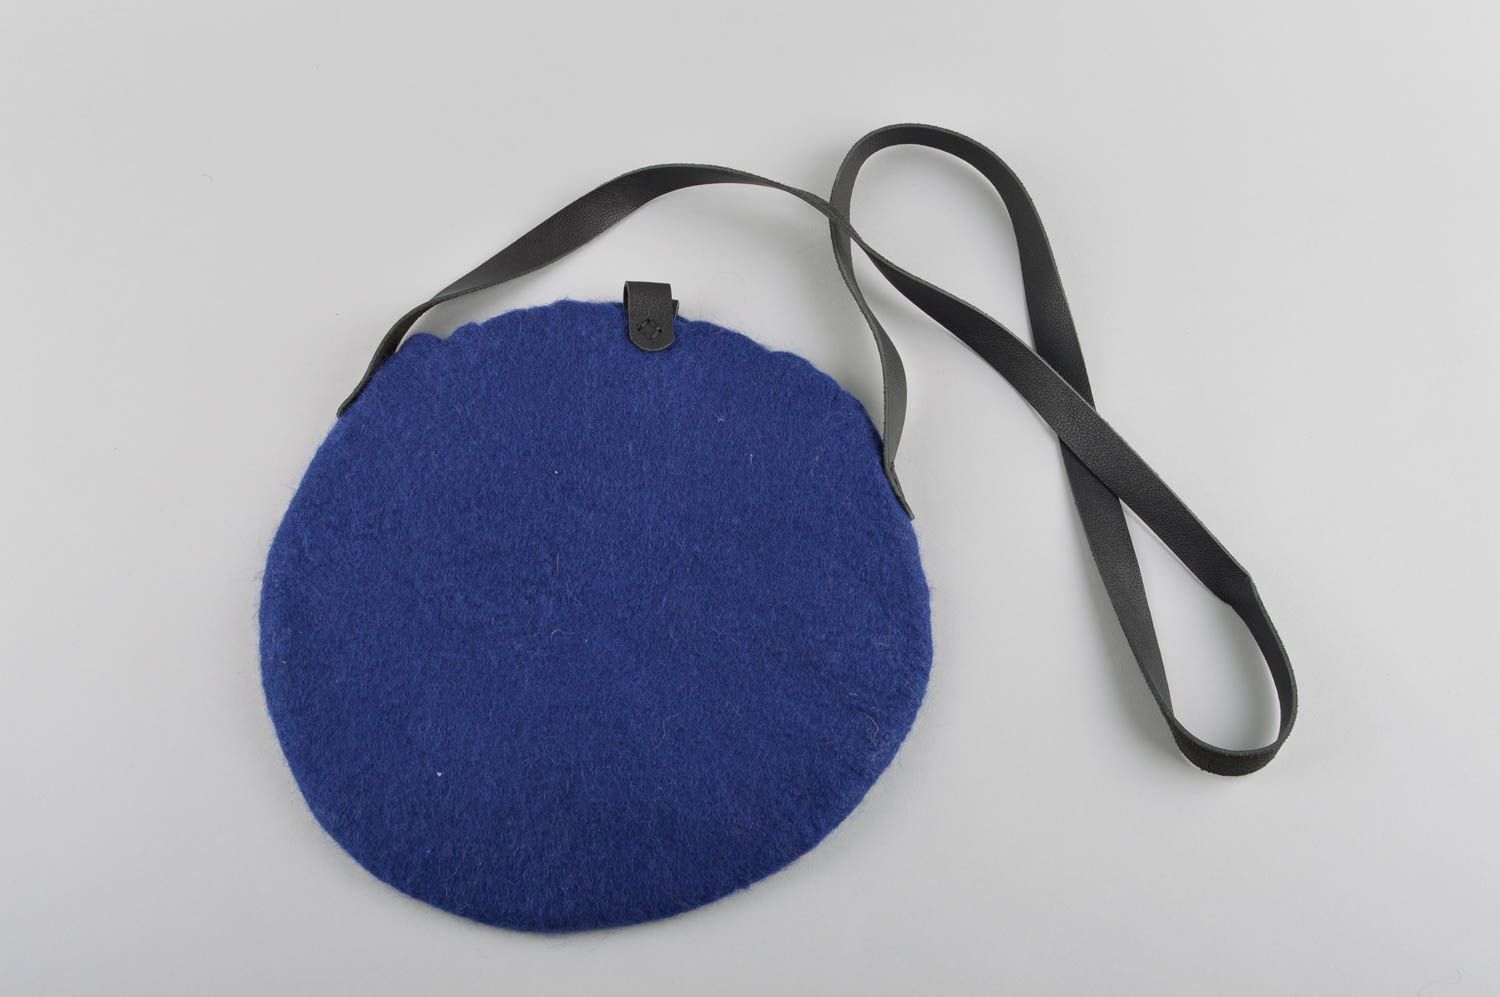 Сумка валяние круглая сумка ручной работы женская сумка синего цвета на ремне  фото 3